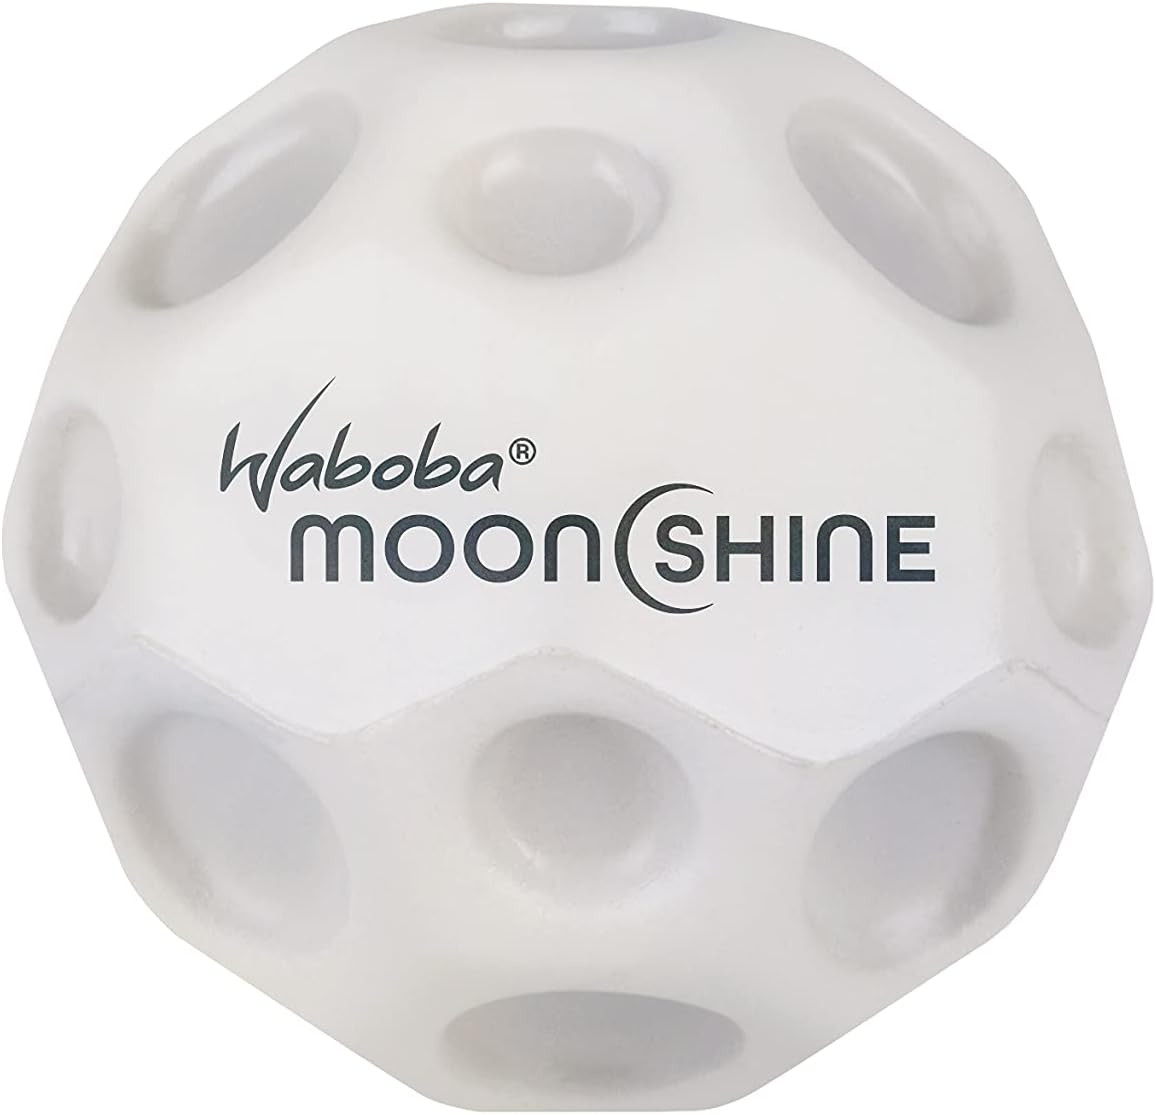 Waboba 3250609  Moon Ball – am Höchsten Springender Gummiball – Patentiertes Original-Design – Ballkrater Erzeugen beim Aufprall EIN knallendes Geräusch – Leicht Greifbar – Flummies für Kinder - 63mm MOONSHINE mit LED- leuchtet von innen